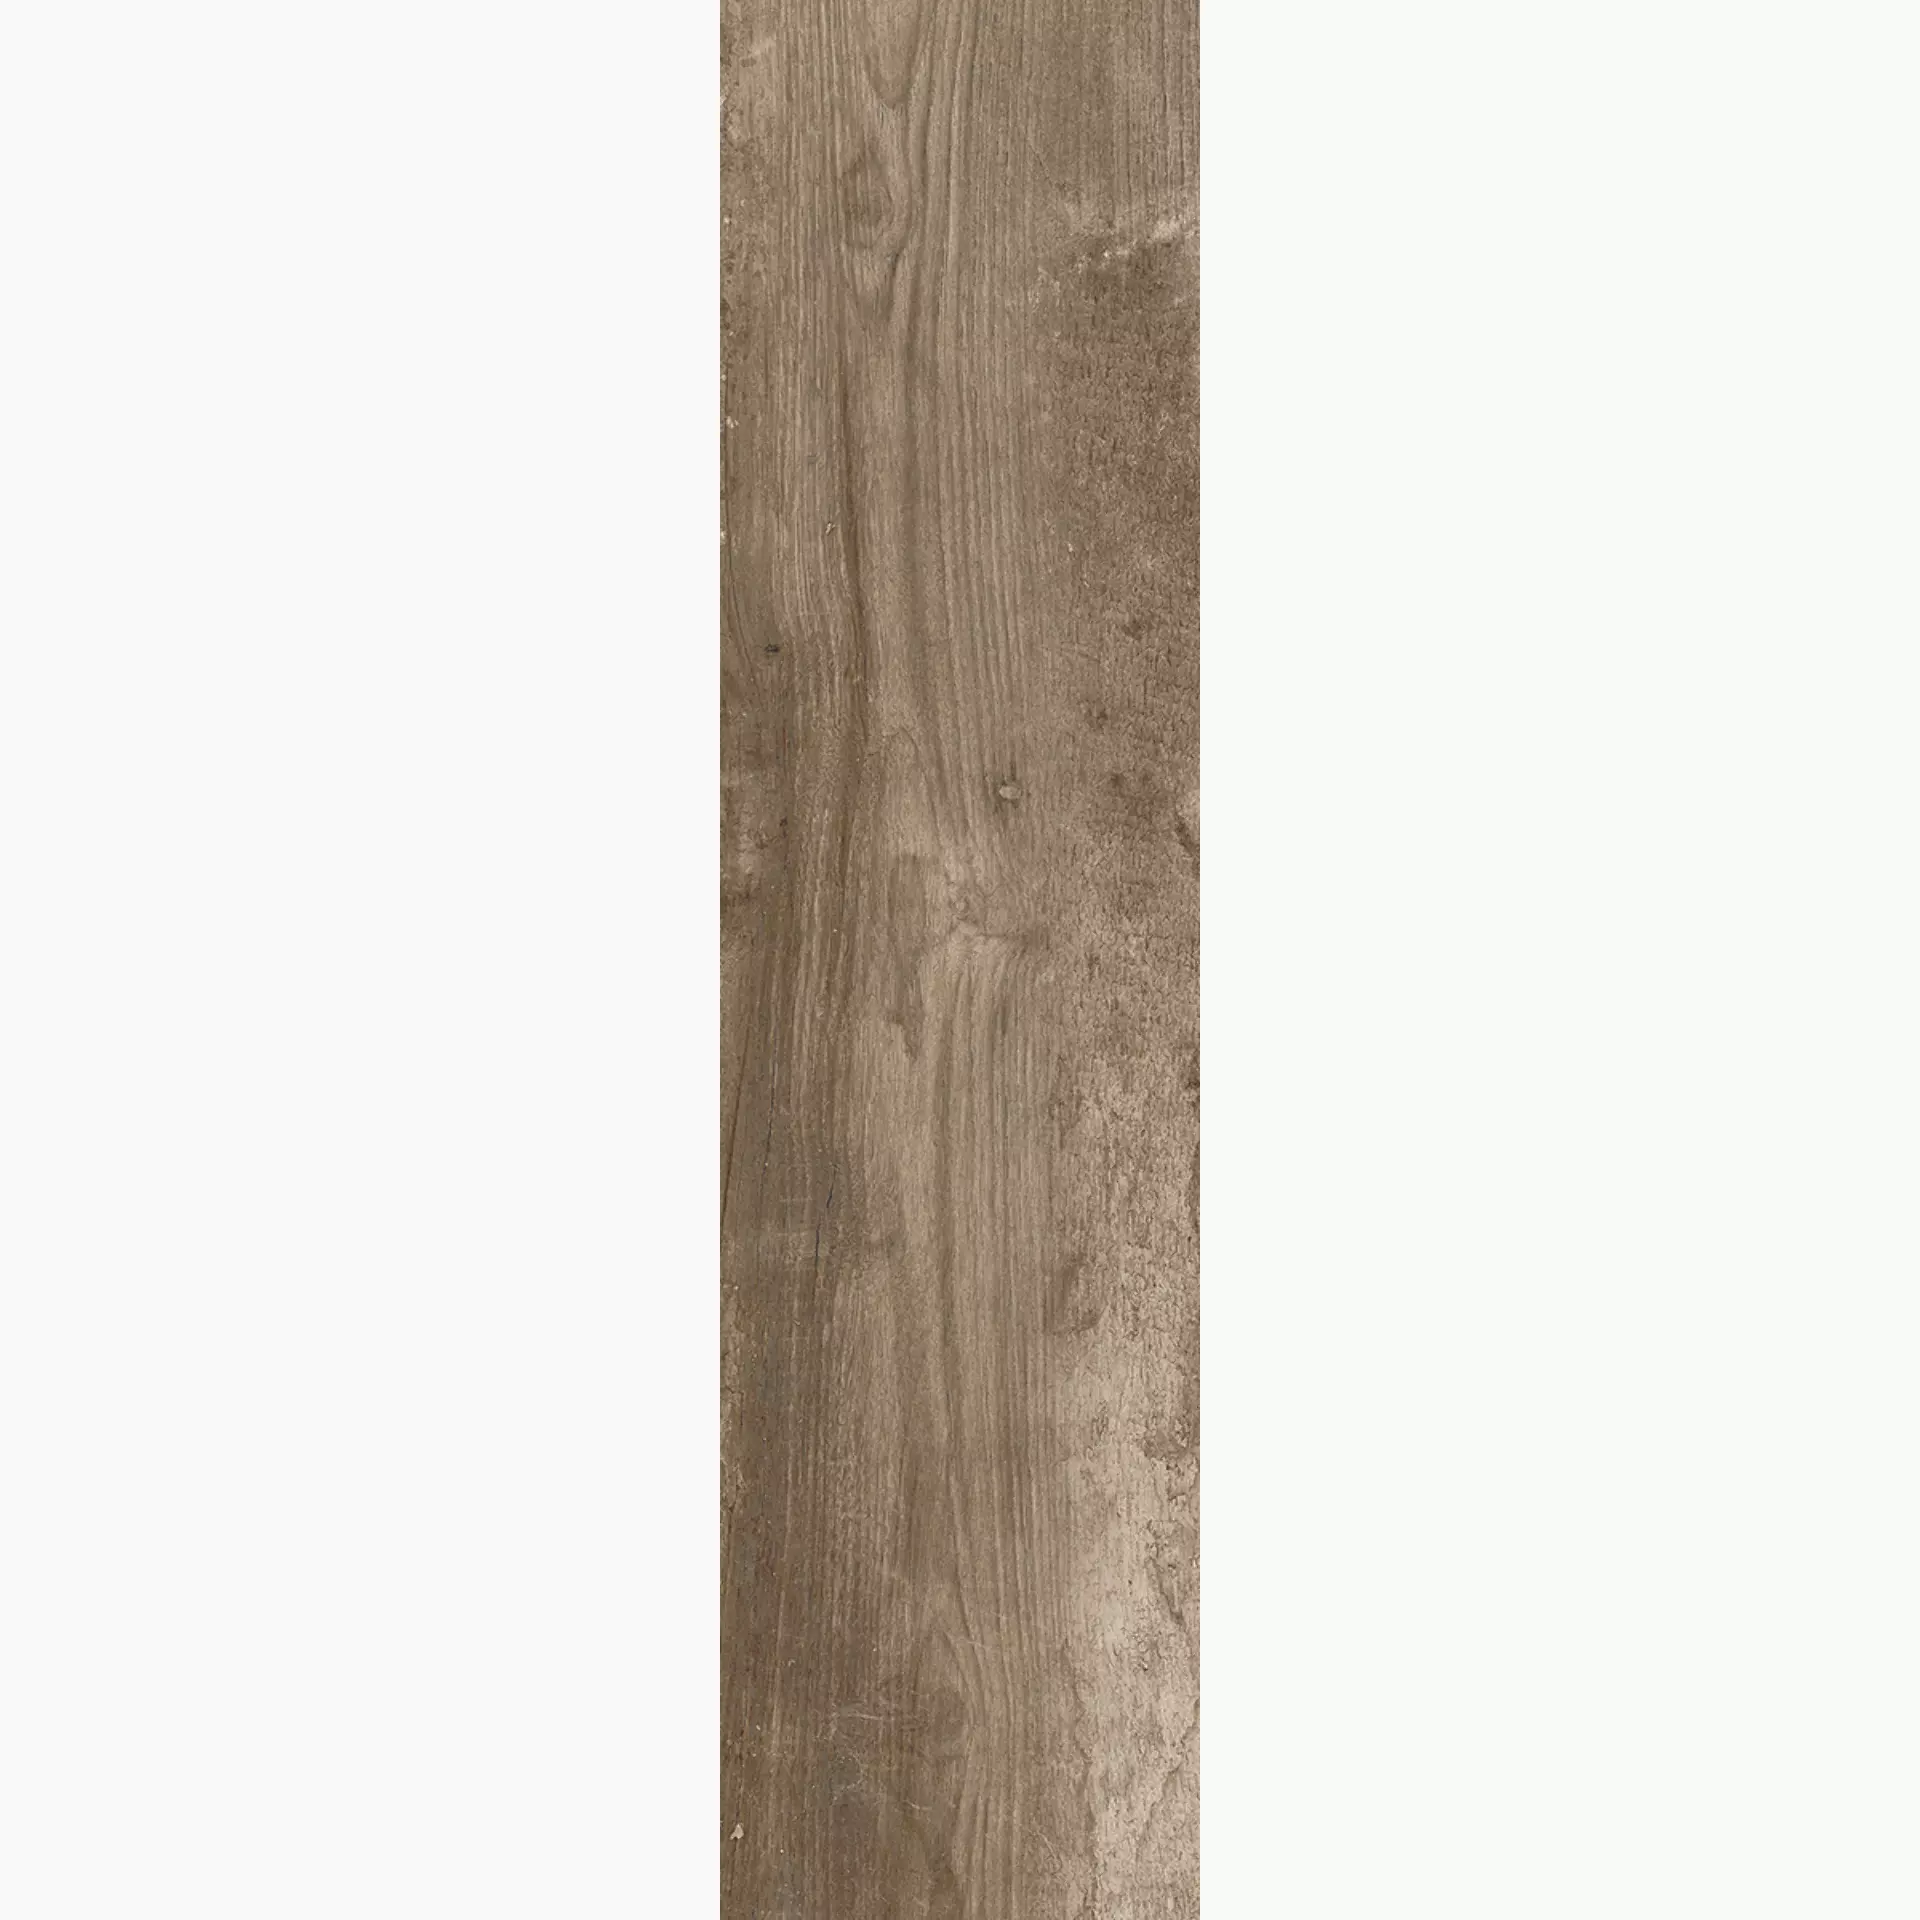 Rondine Living Marrone Naturale J86153 15x61cm 9mm